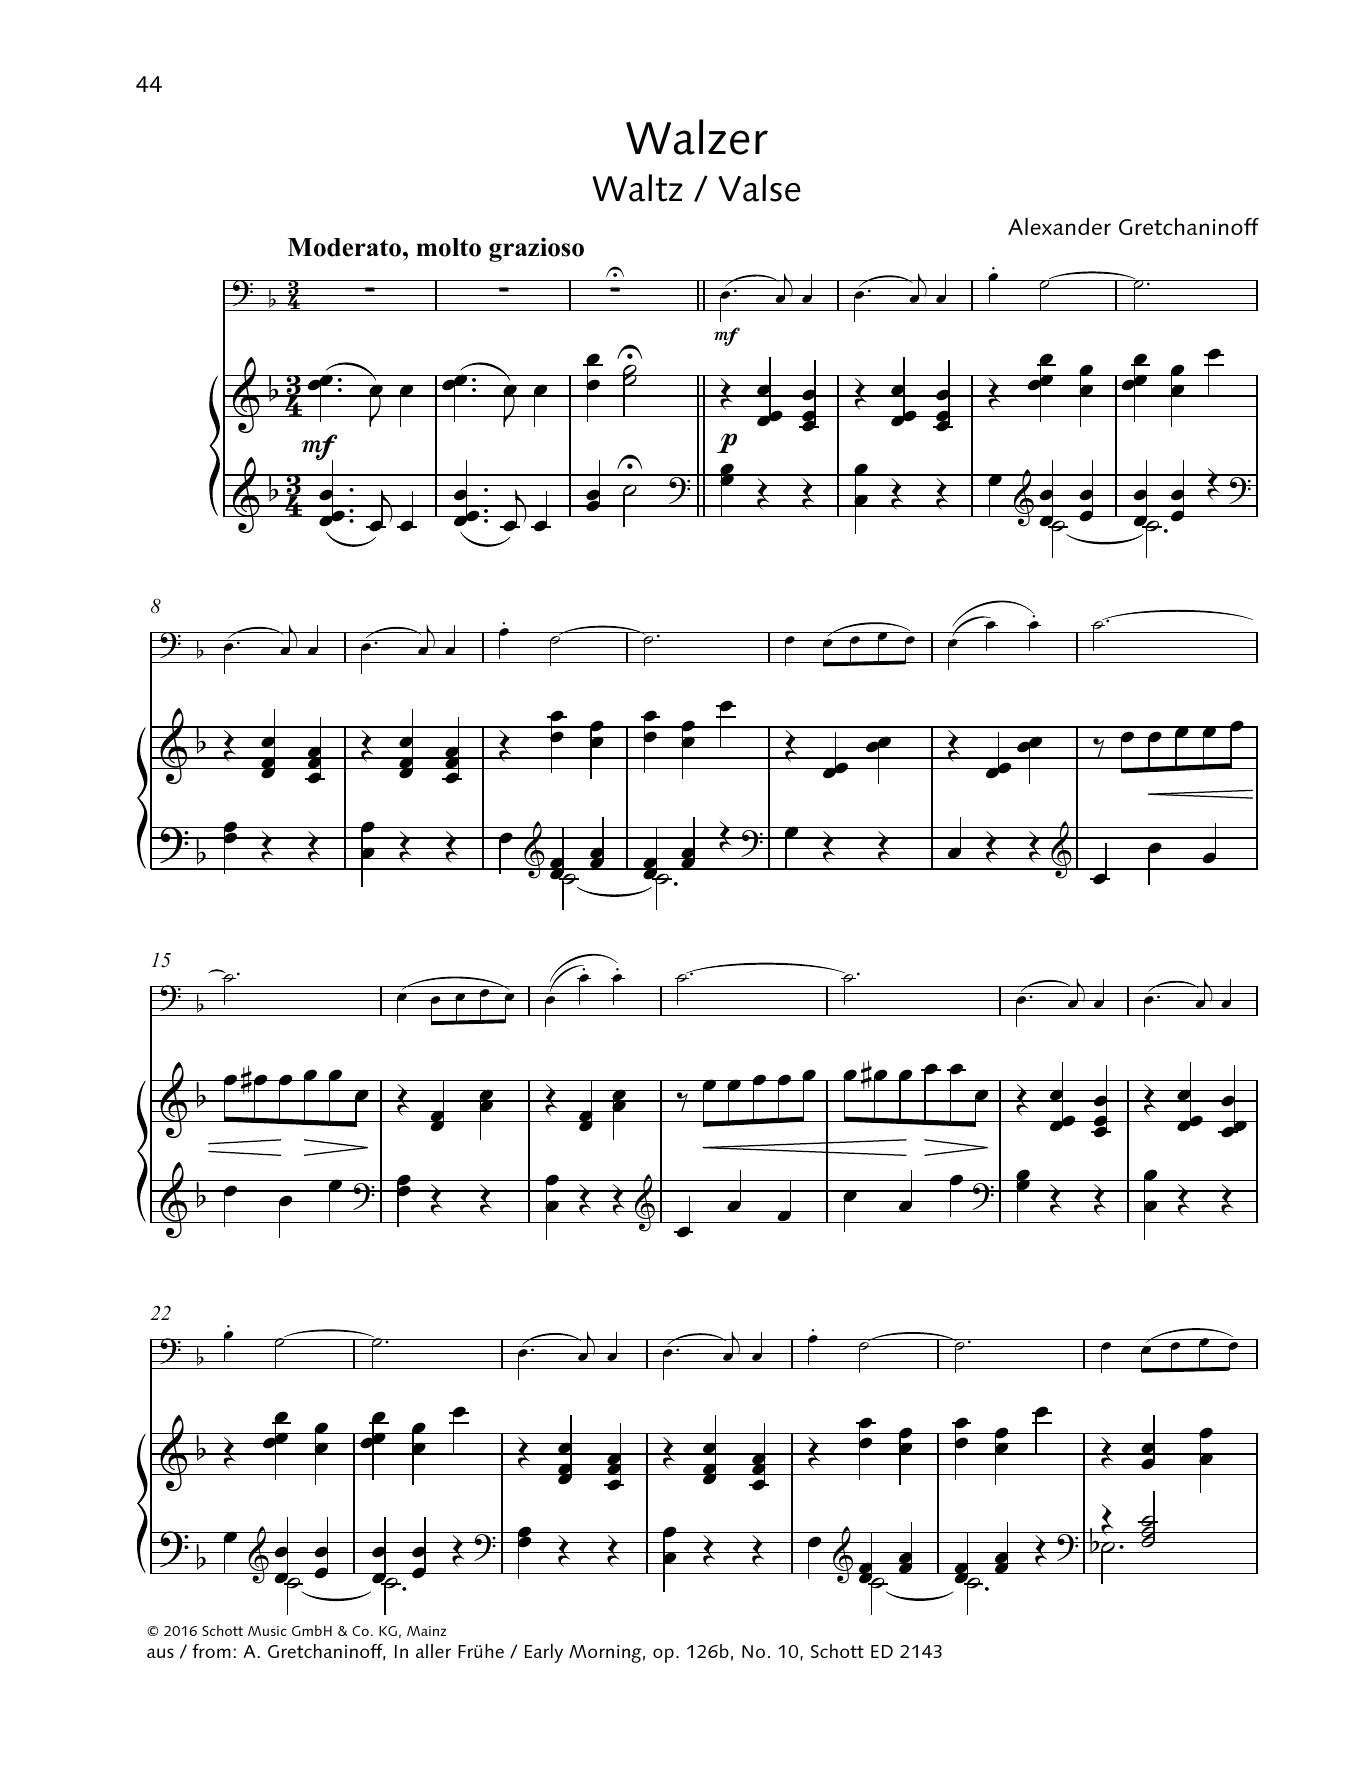 Waltz (String Solo) von Alexander Gretchaninoff